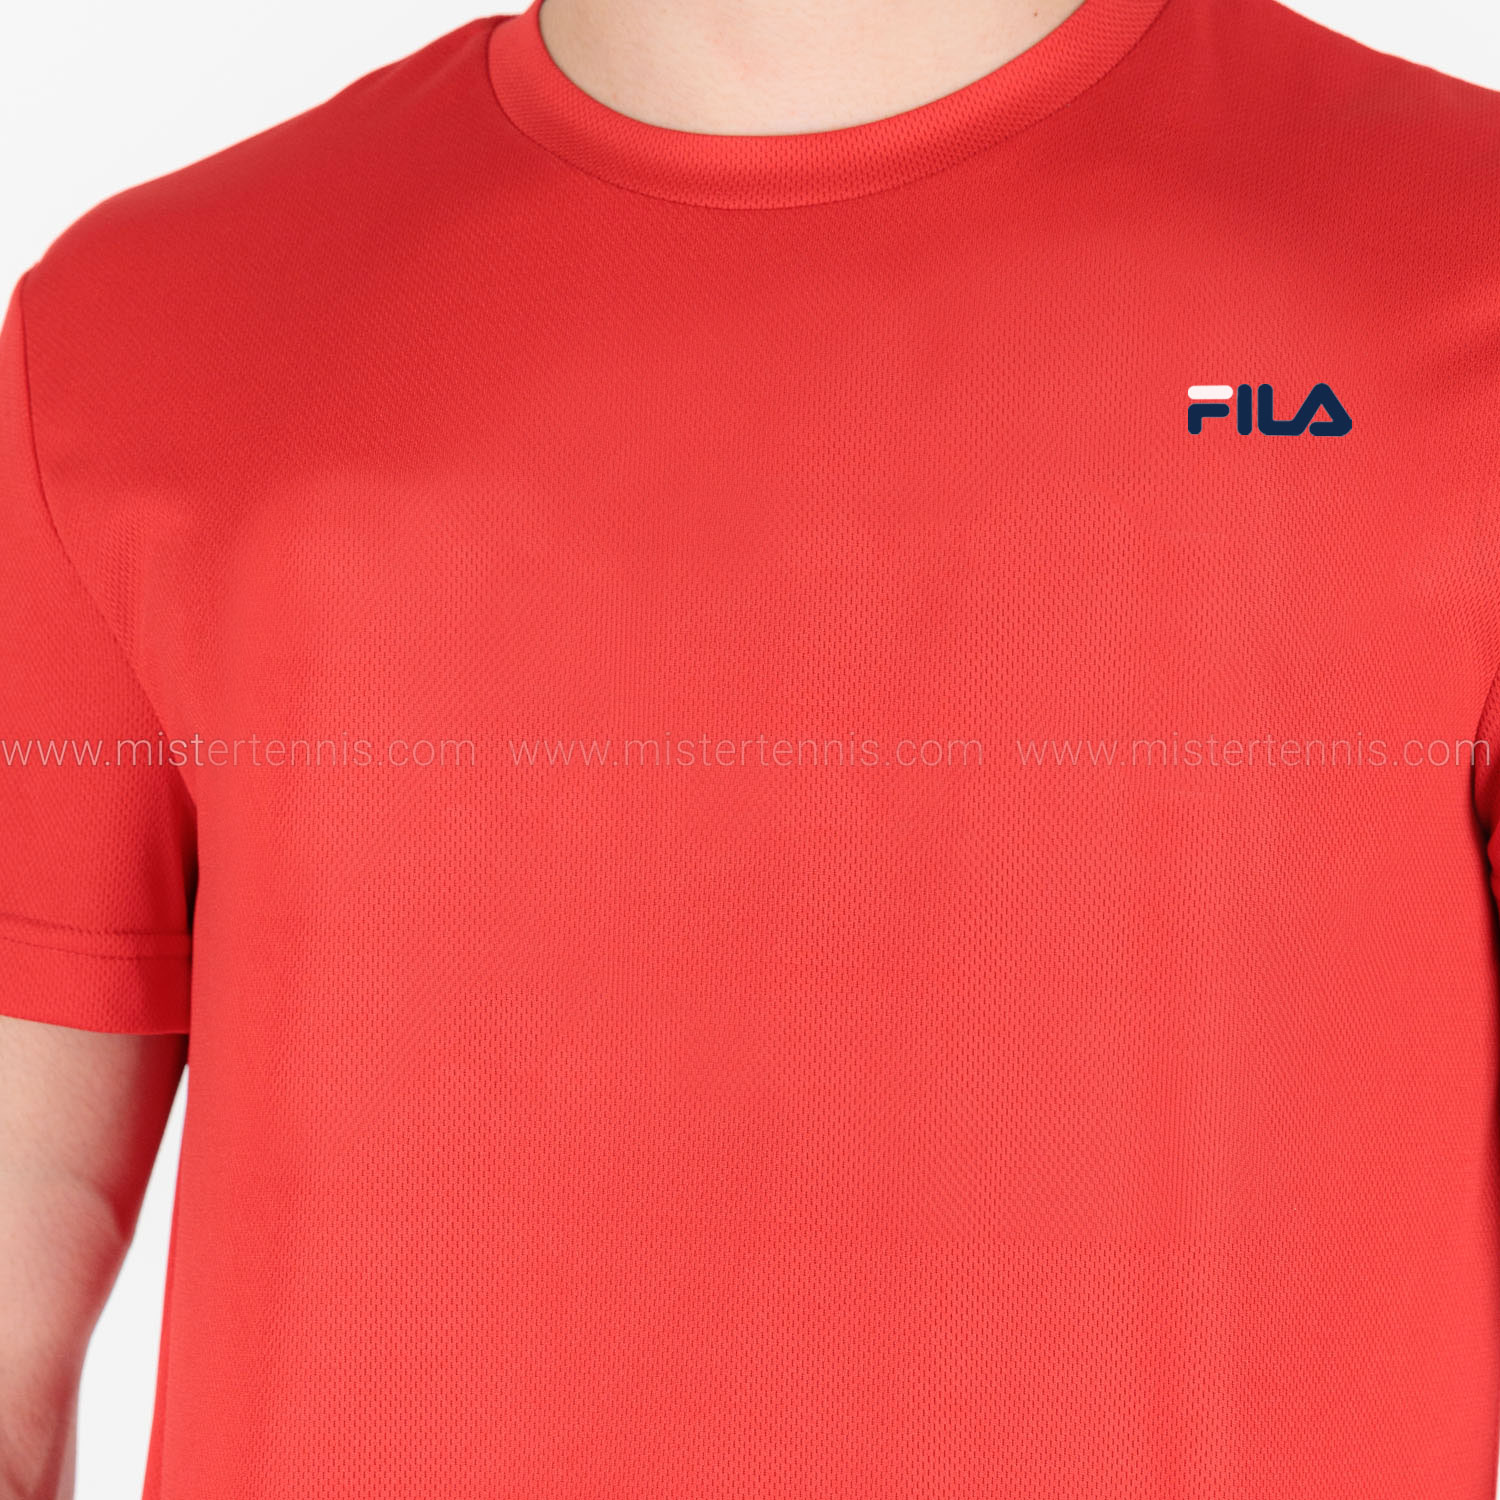 Fila Logo Maglietta - Red